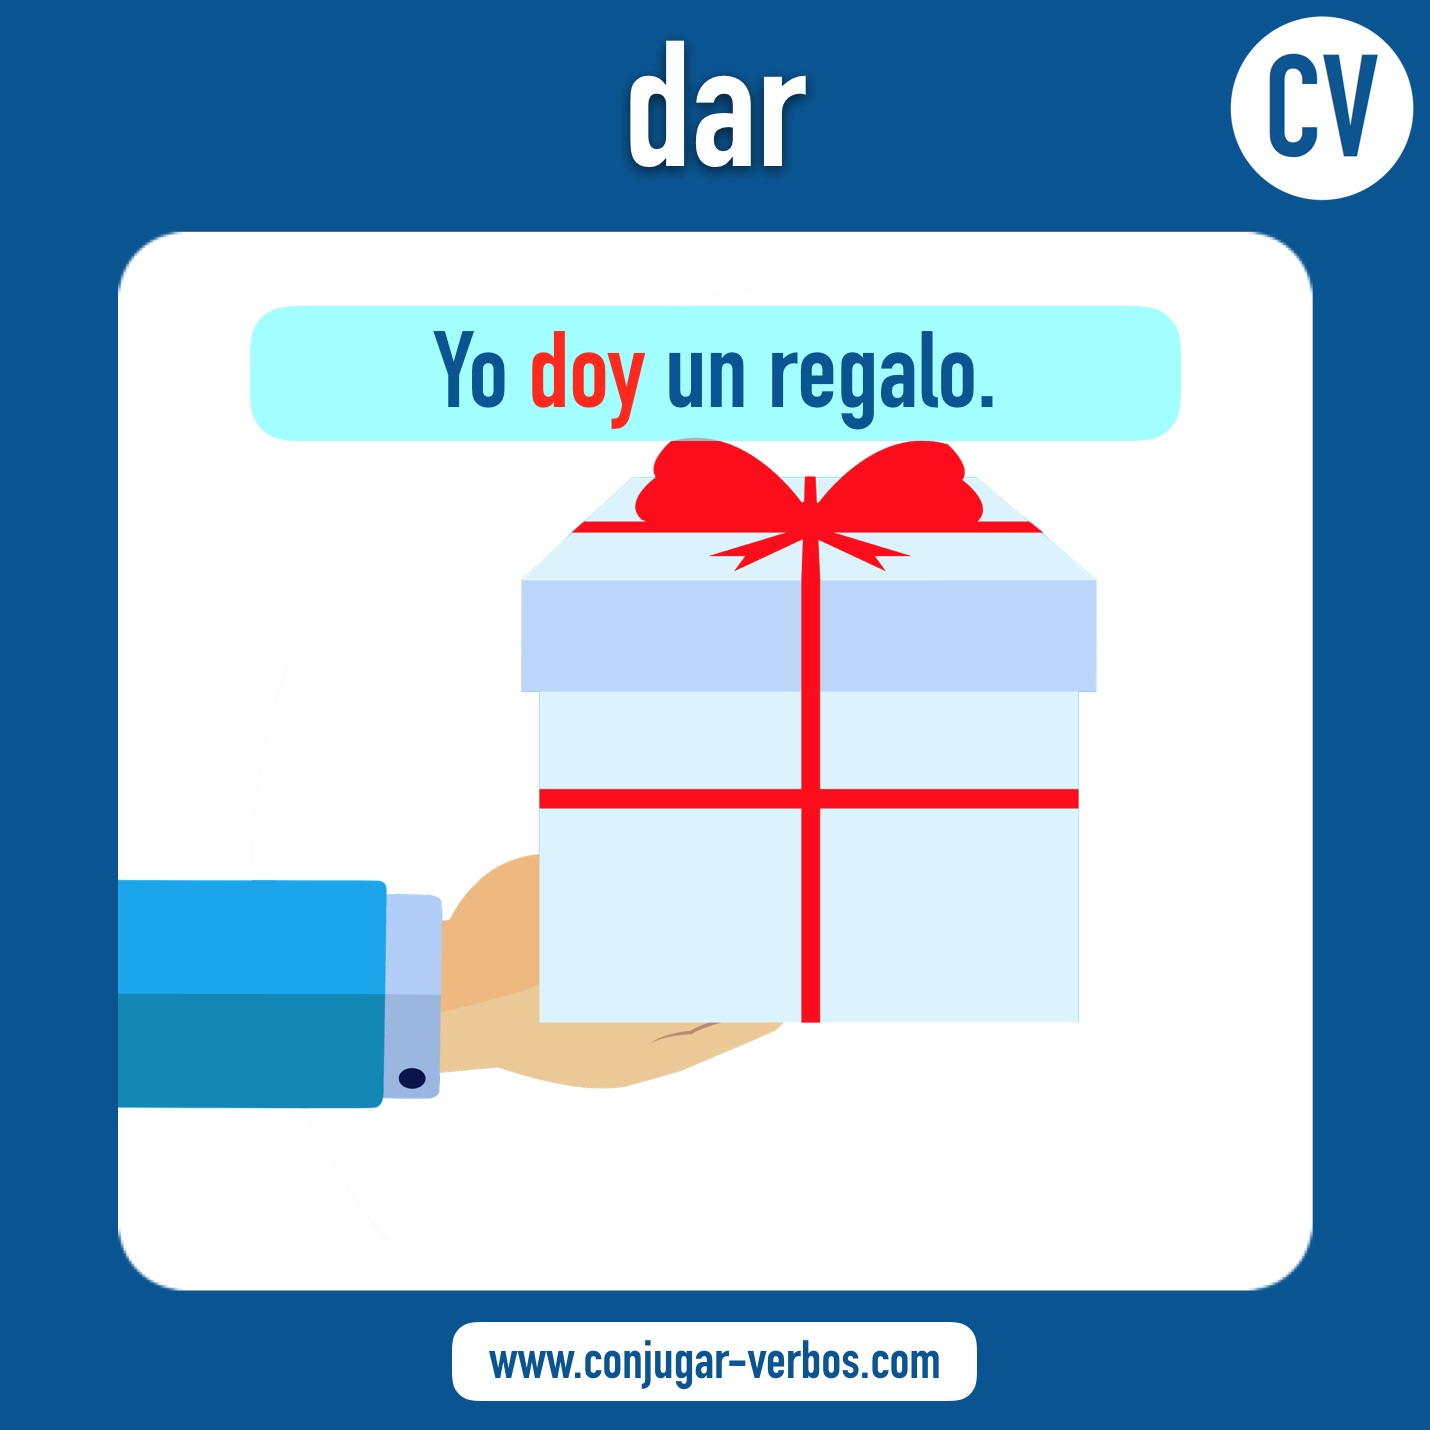 verbo dar | dar | imagen del verbo dar | conjugacion del verbo dar